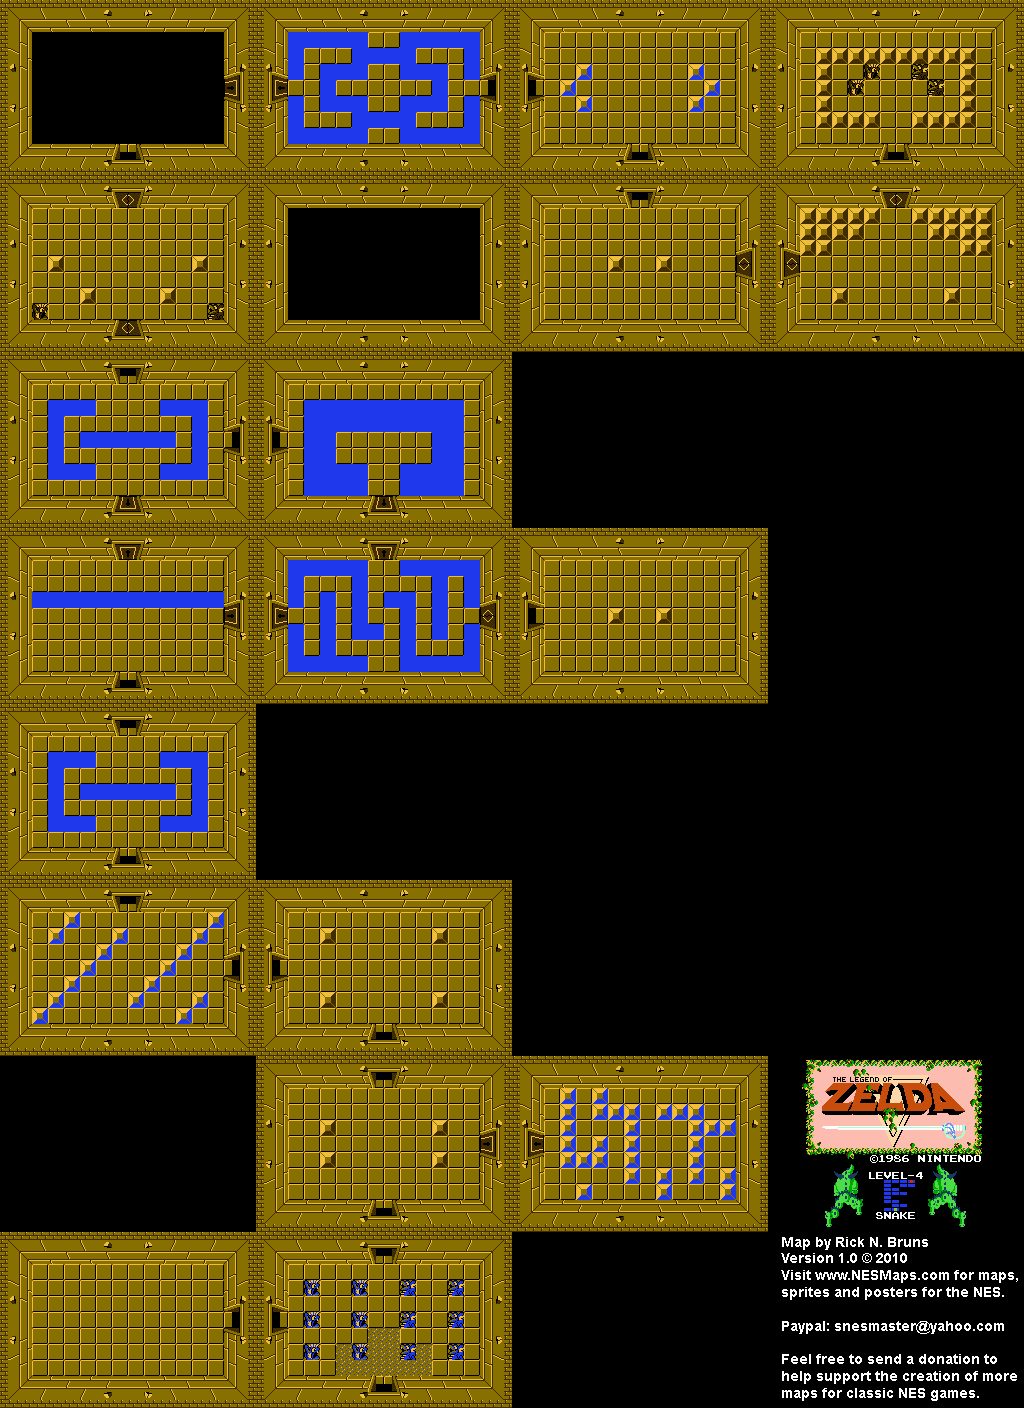 The Legend of Zelda - Level 4 Snake - NES Map BG